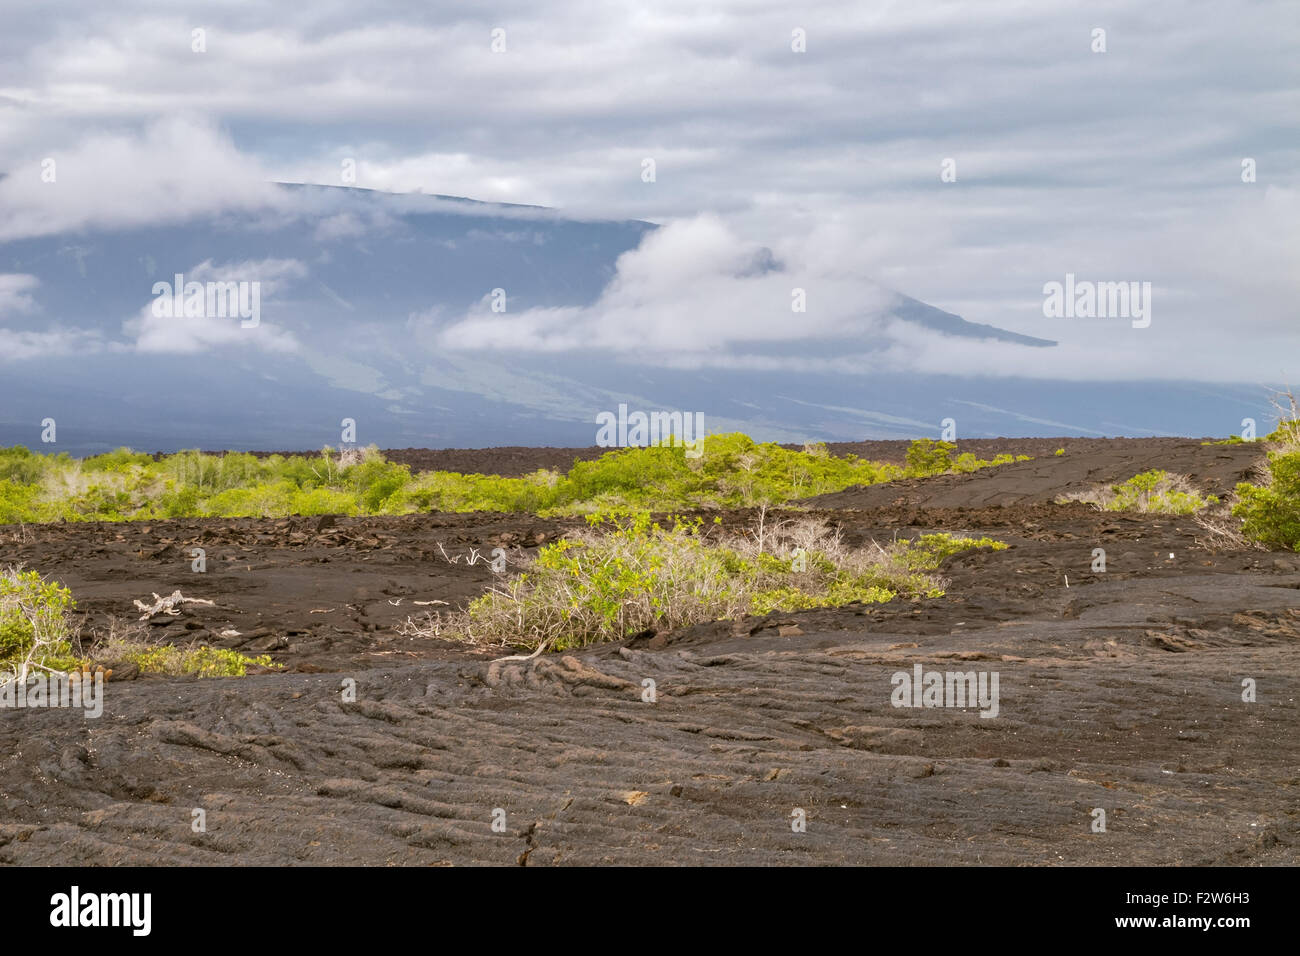 Ropy pahoehoe lava field with shield volcano on Fernandina. Stock Photo